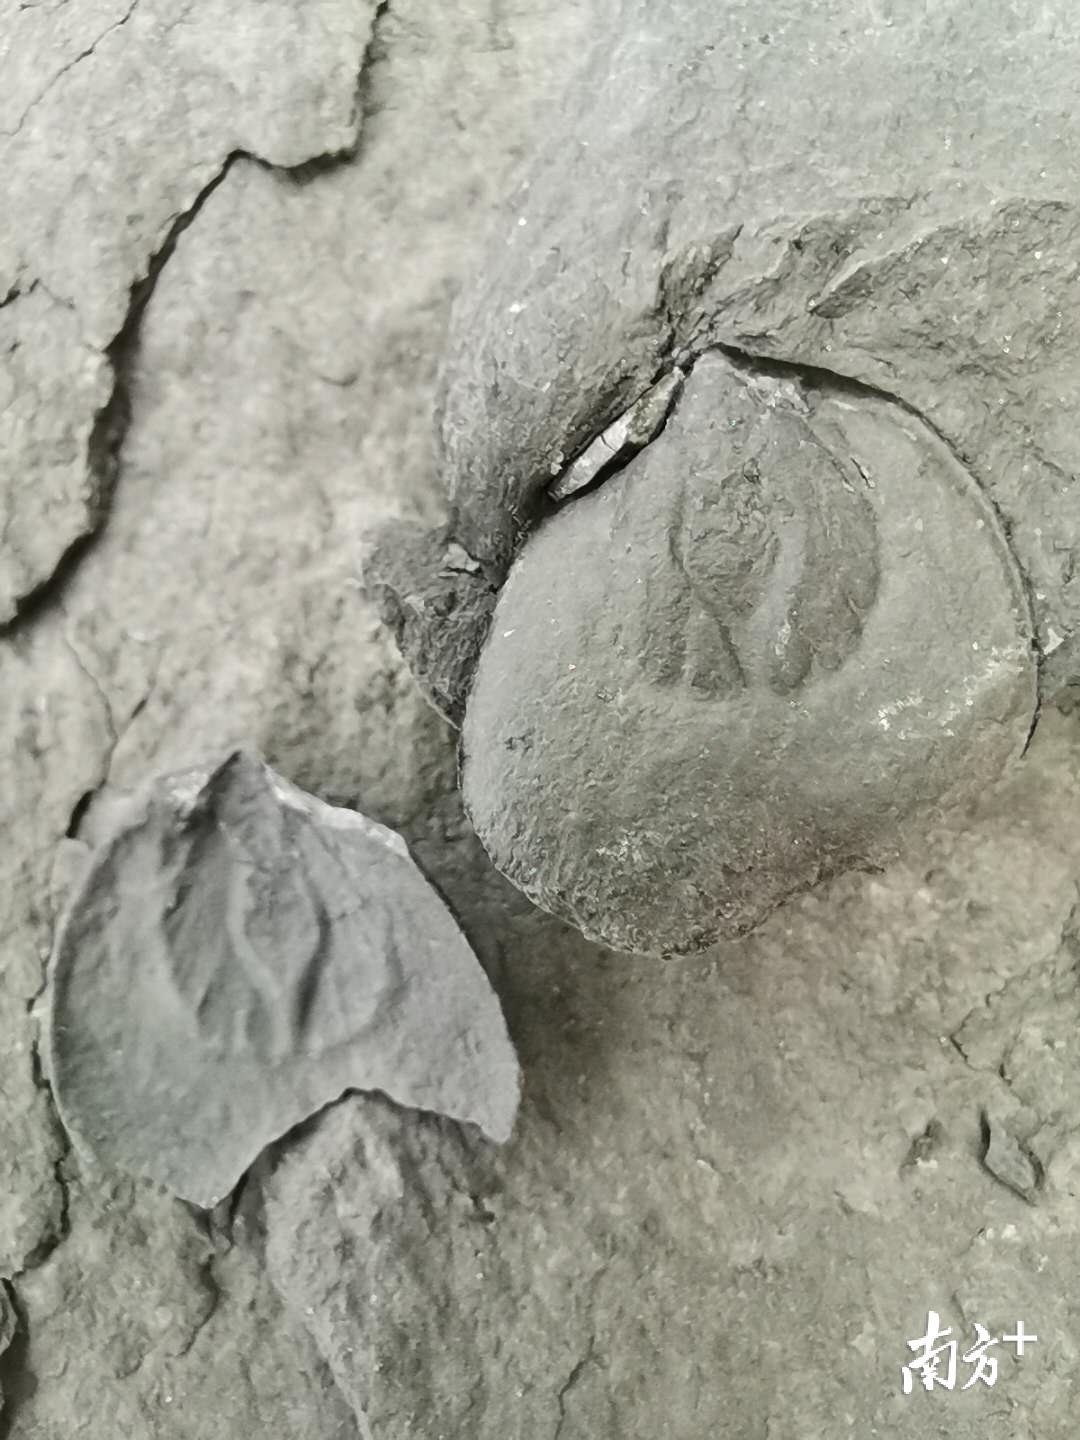 双壳类化石。